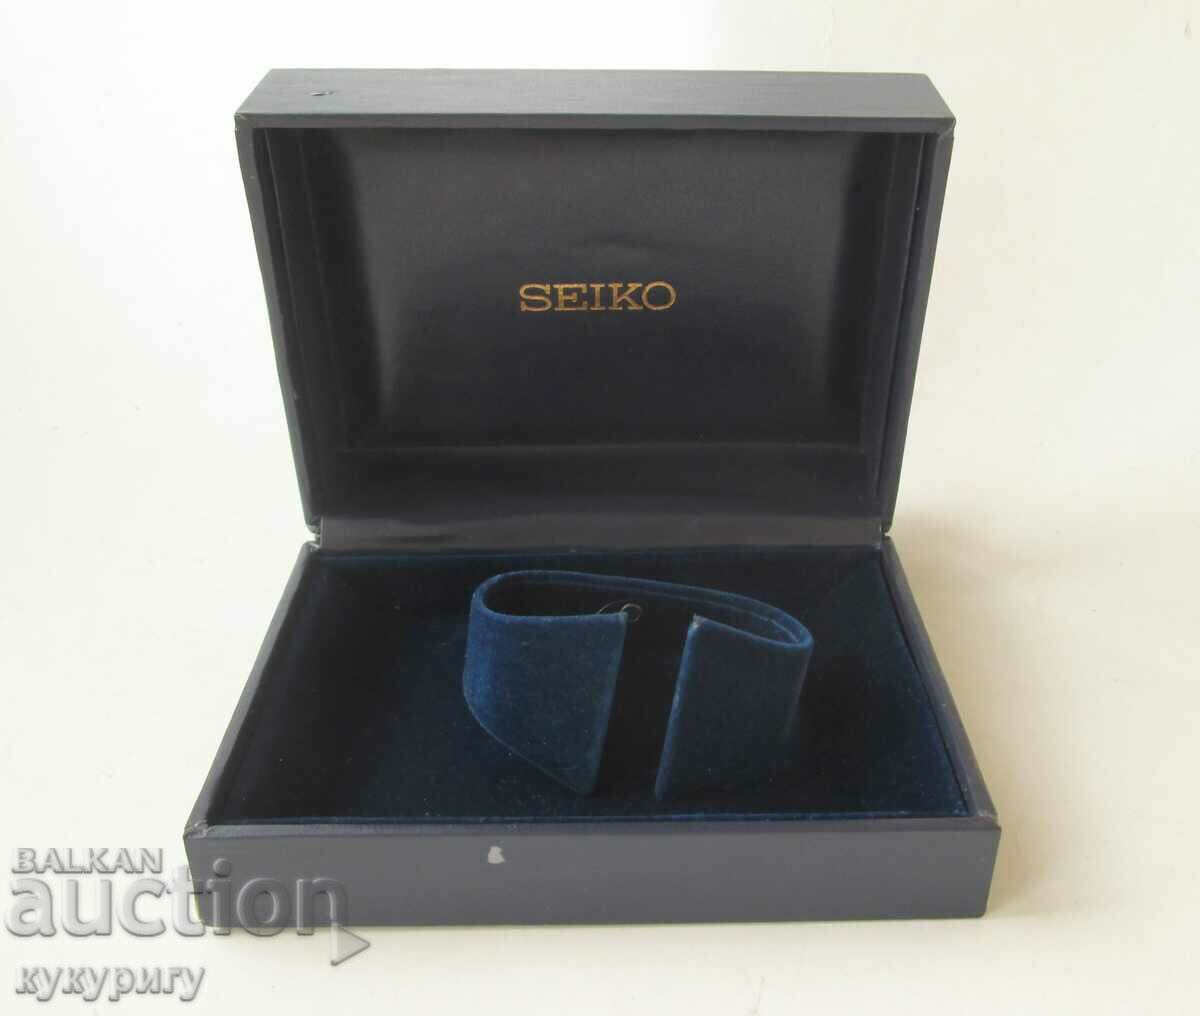 Old original box for Seiko wristwatch SEIKO